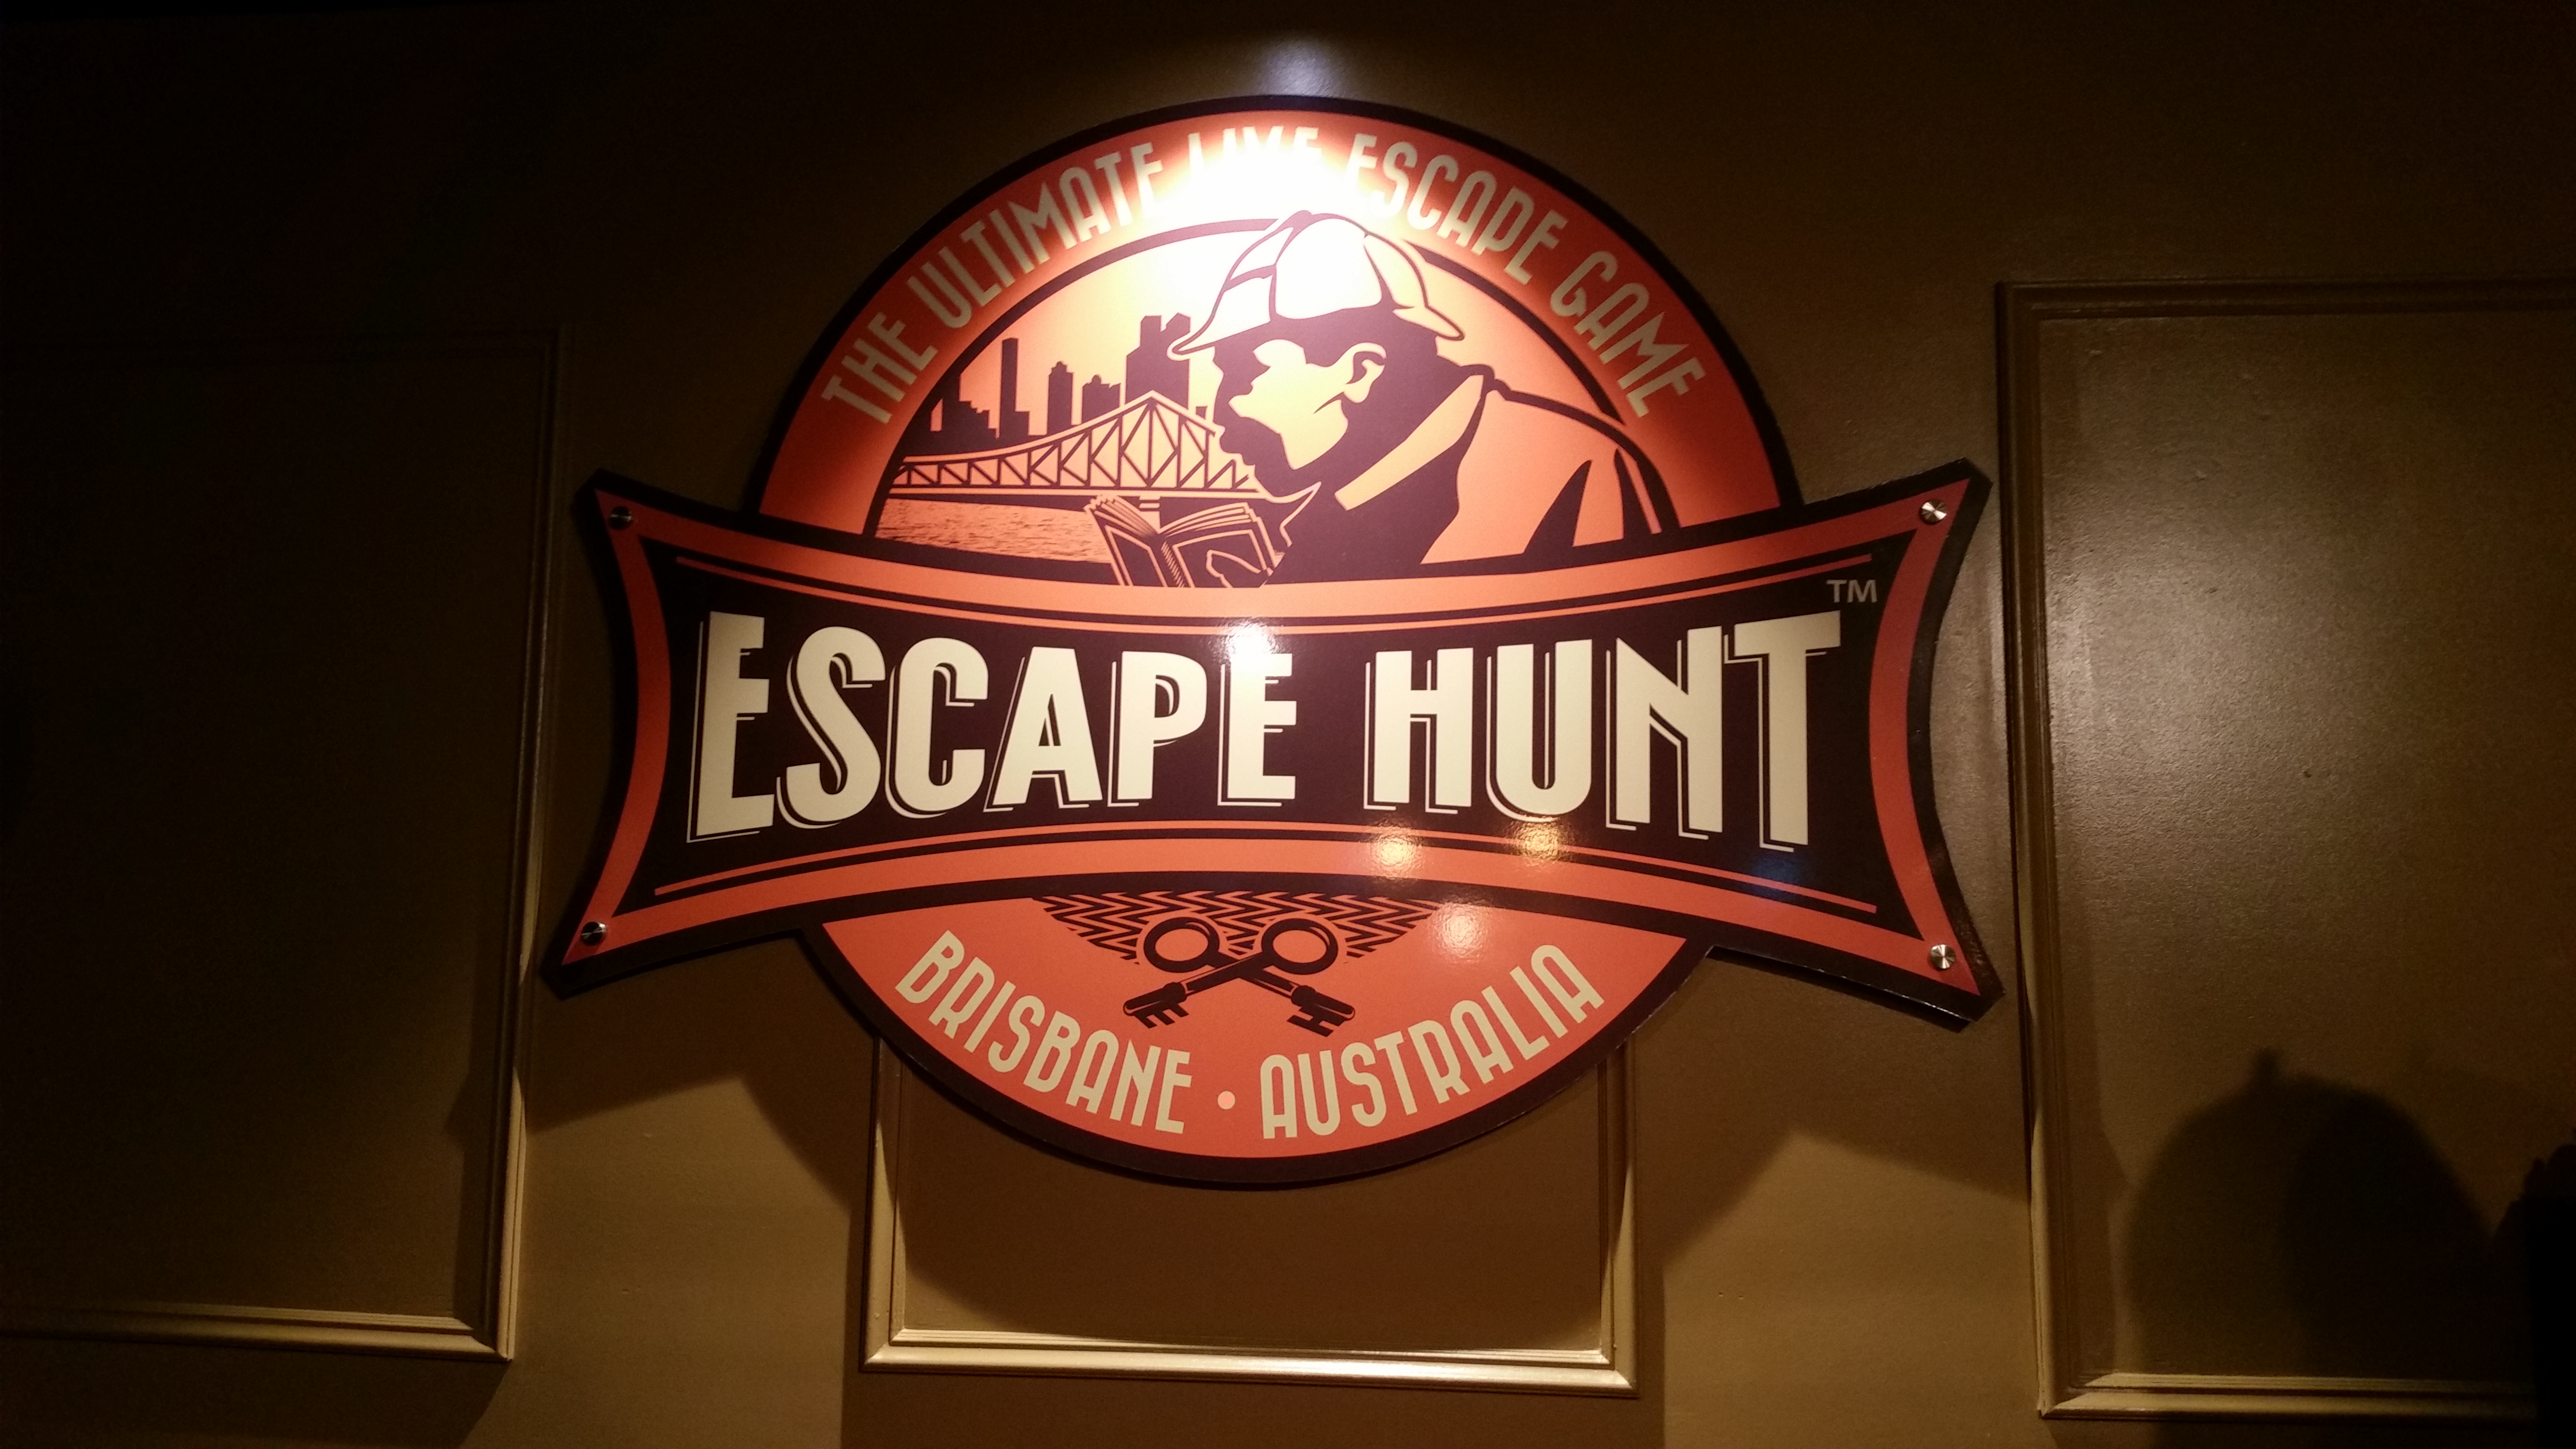 The escape hunt